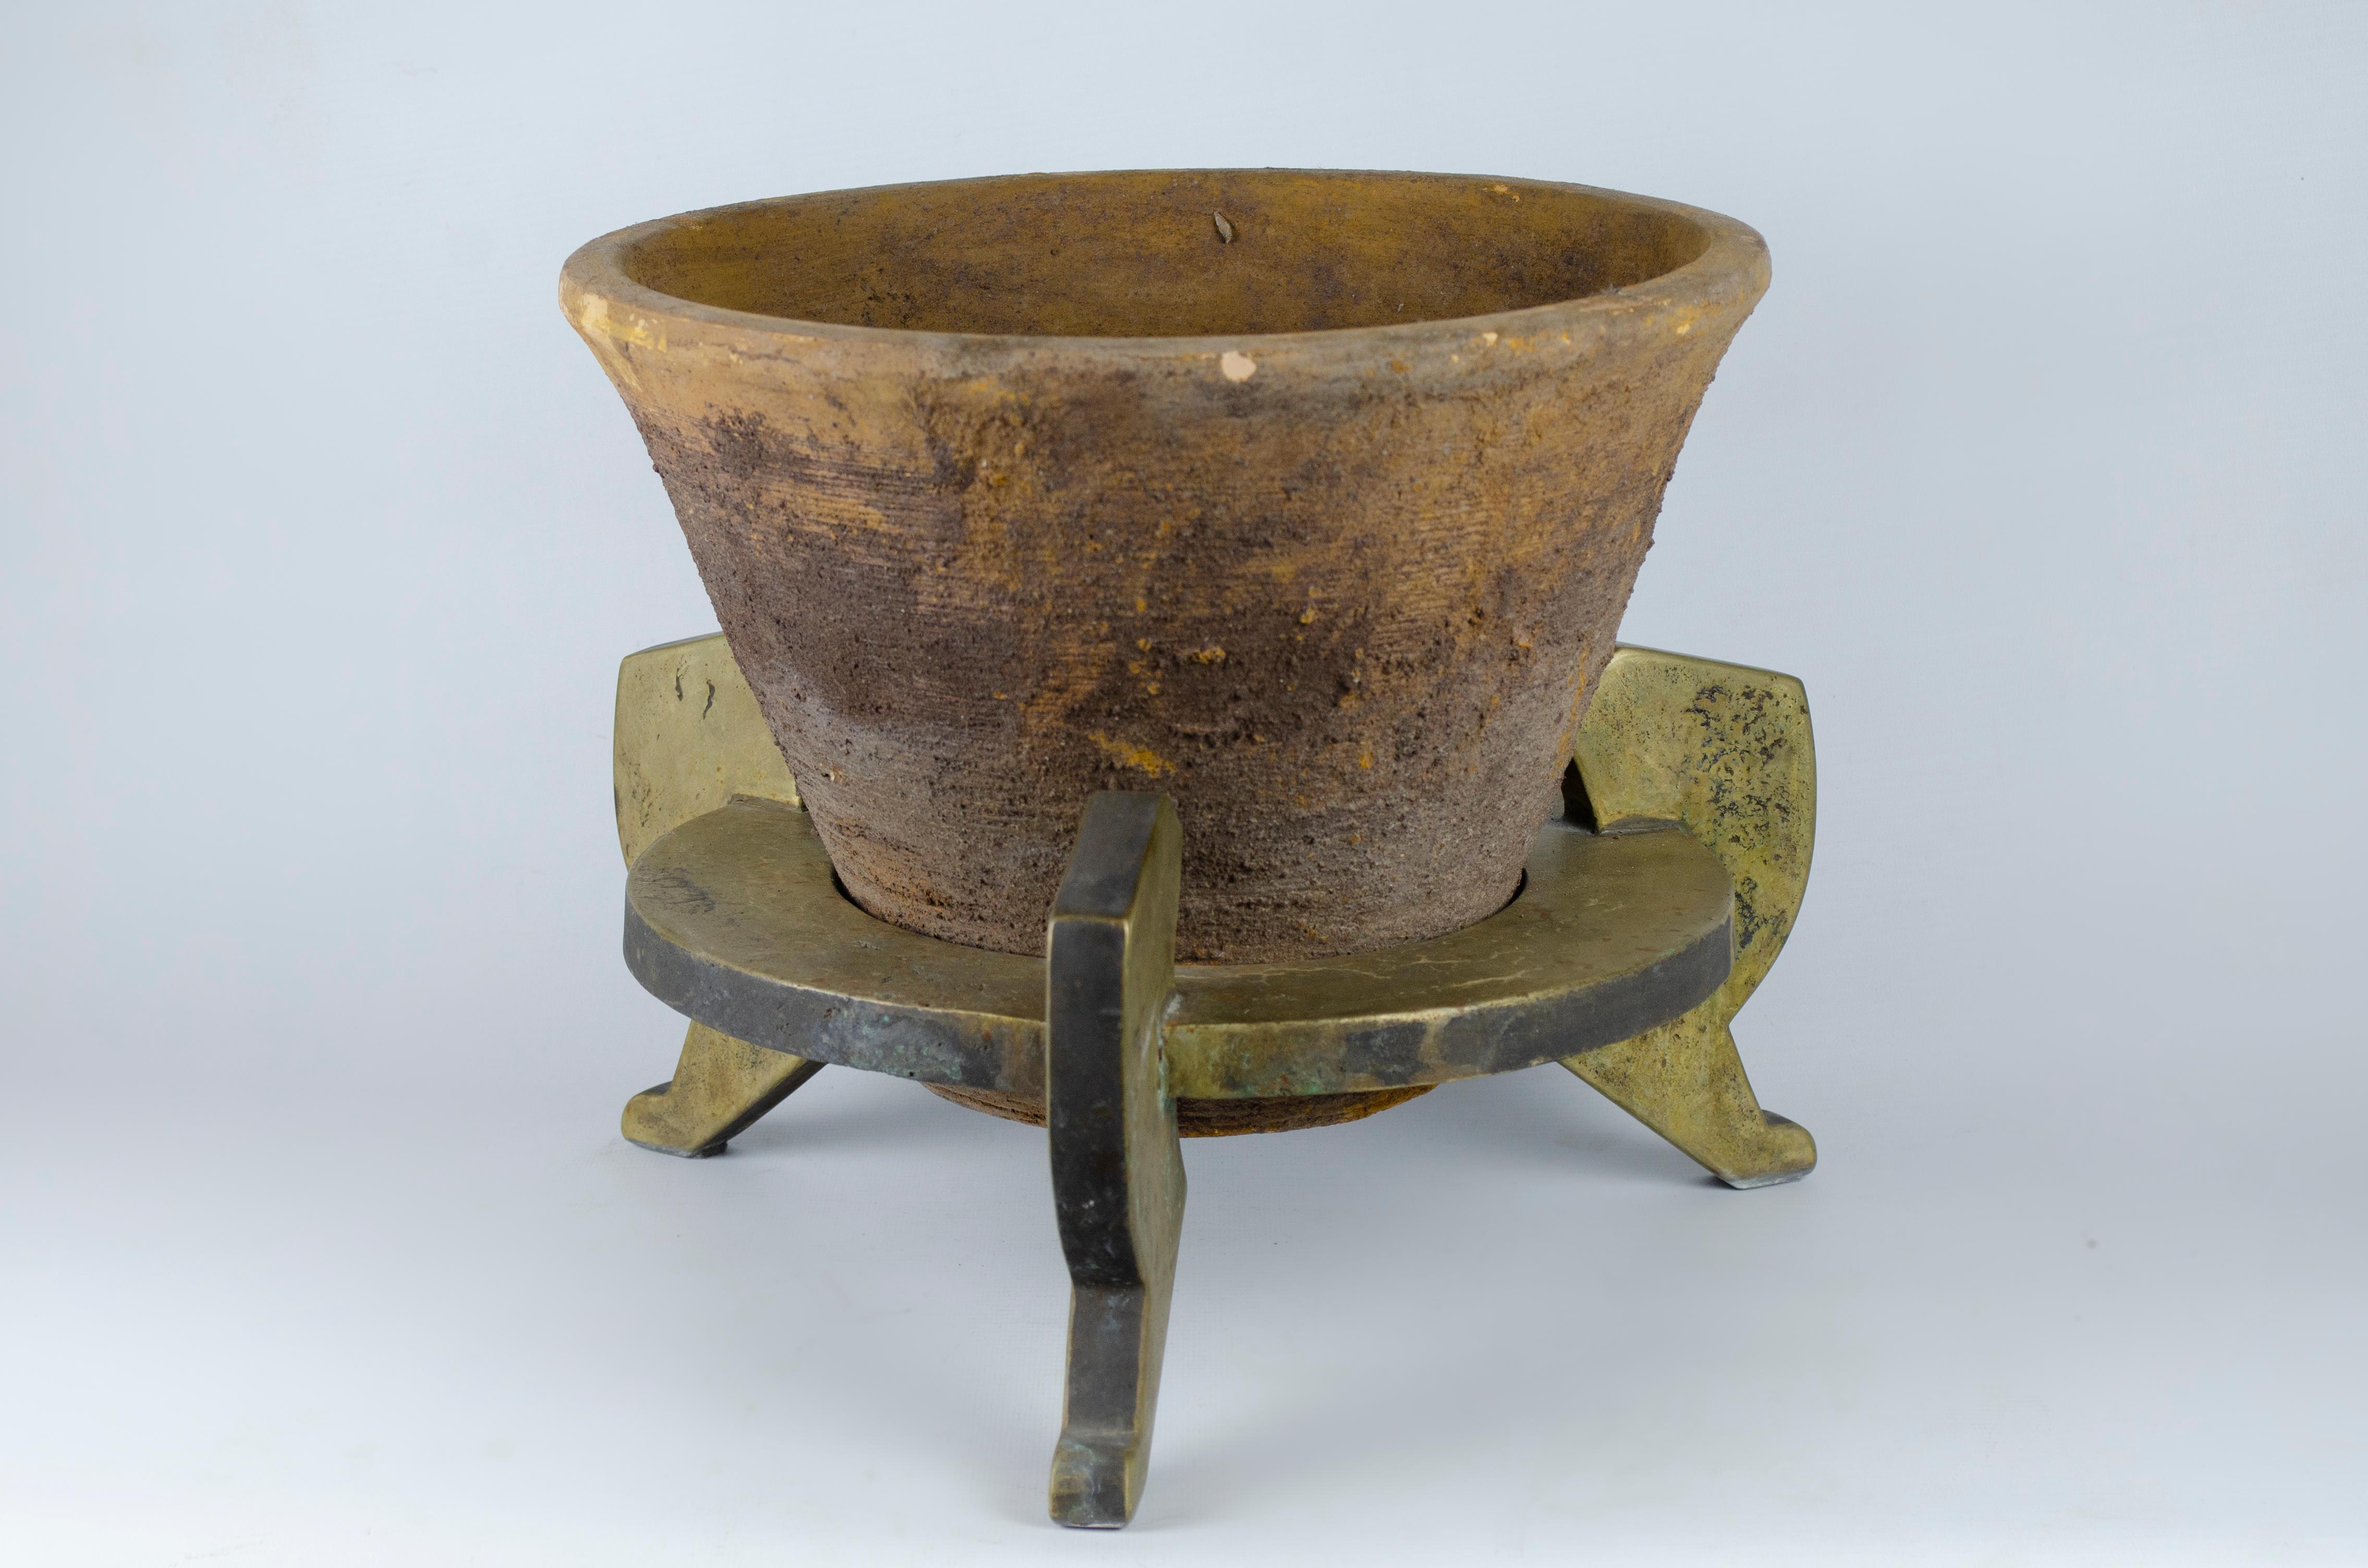 Paire de jardinières réalisées par Marc Du Plantier (1901 -1974). Le design est d'inspiration égyptienne, les pots sont en terre cuite et la base est en bronze avec une patine oxydée.

Elles ont été reproduites à la Galerie des Antiquités ALB à